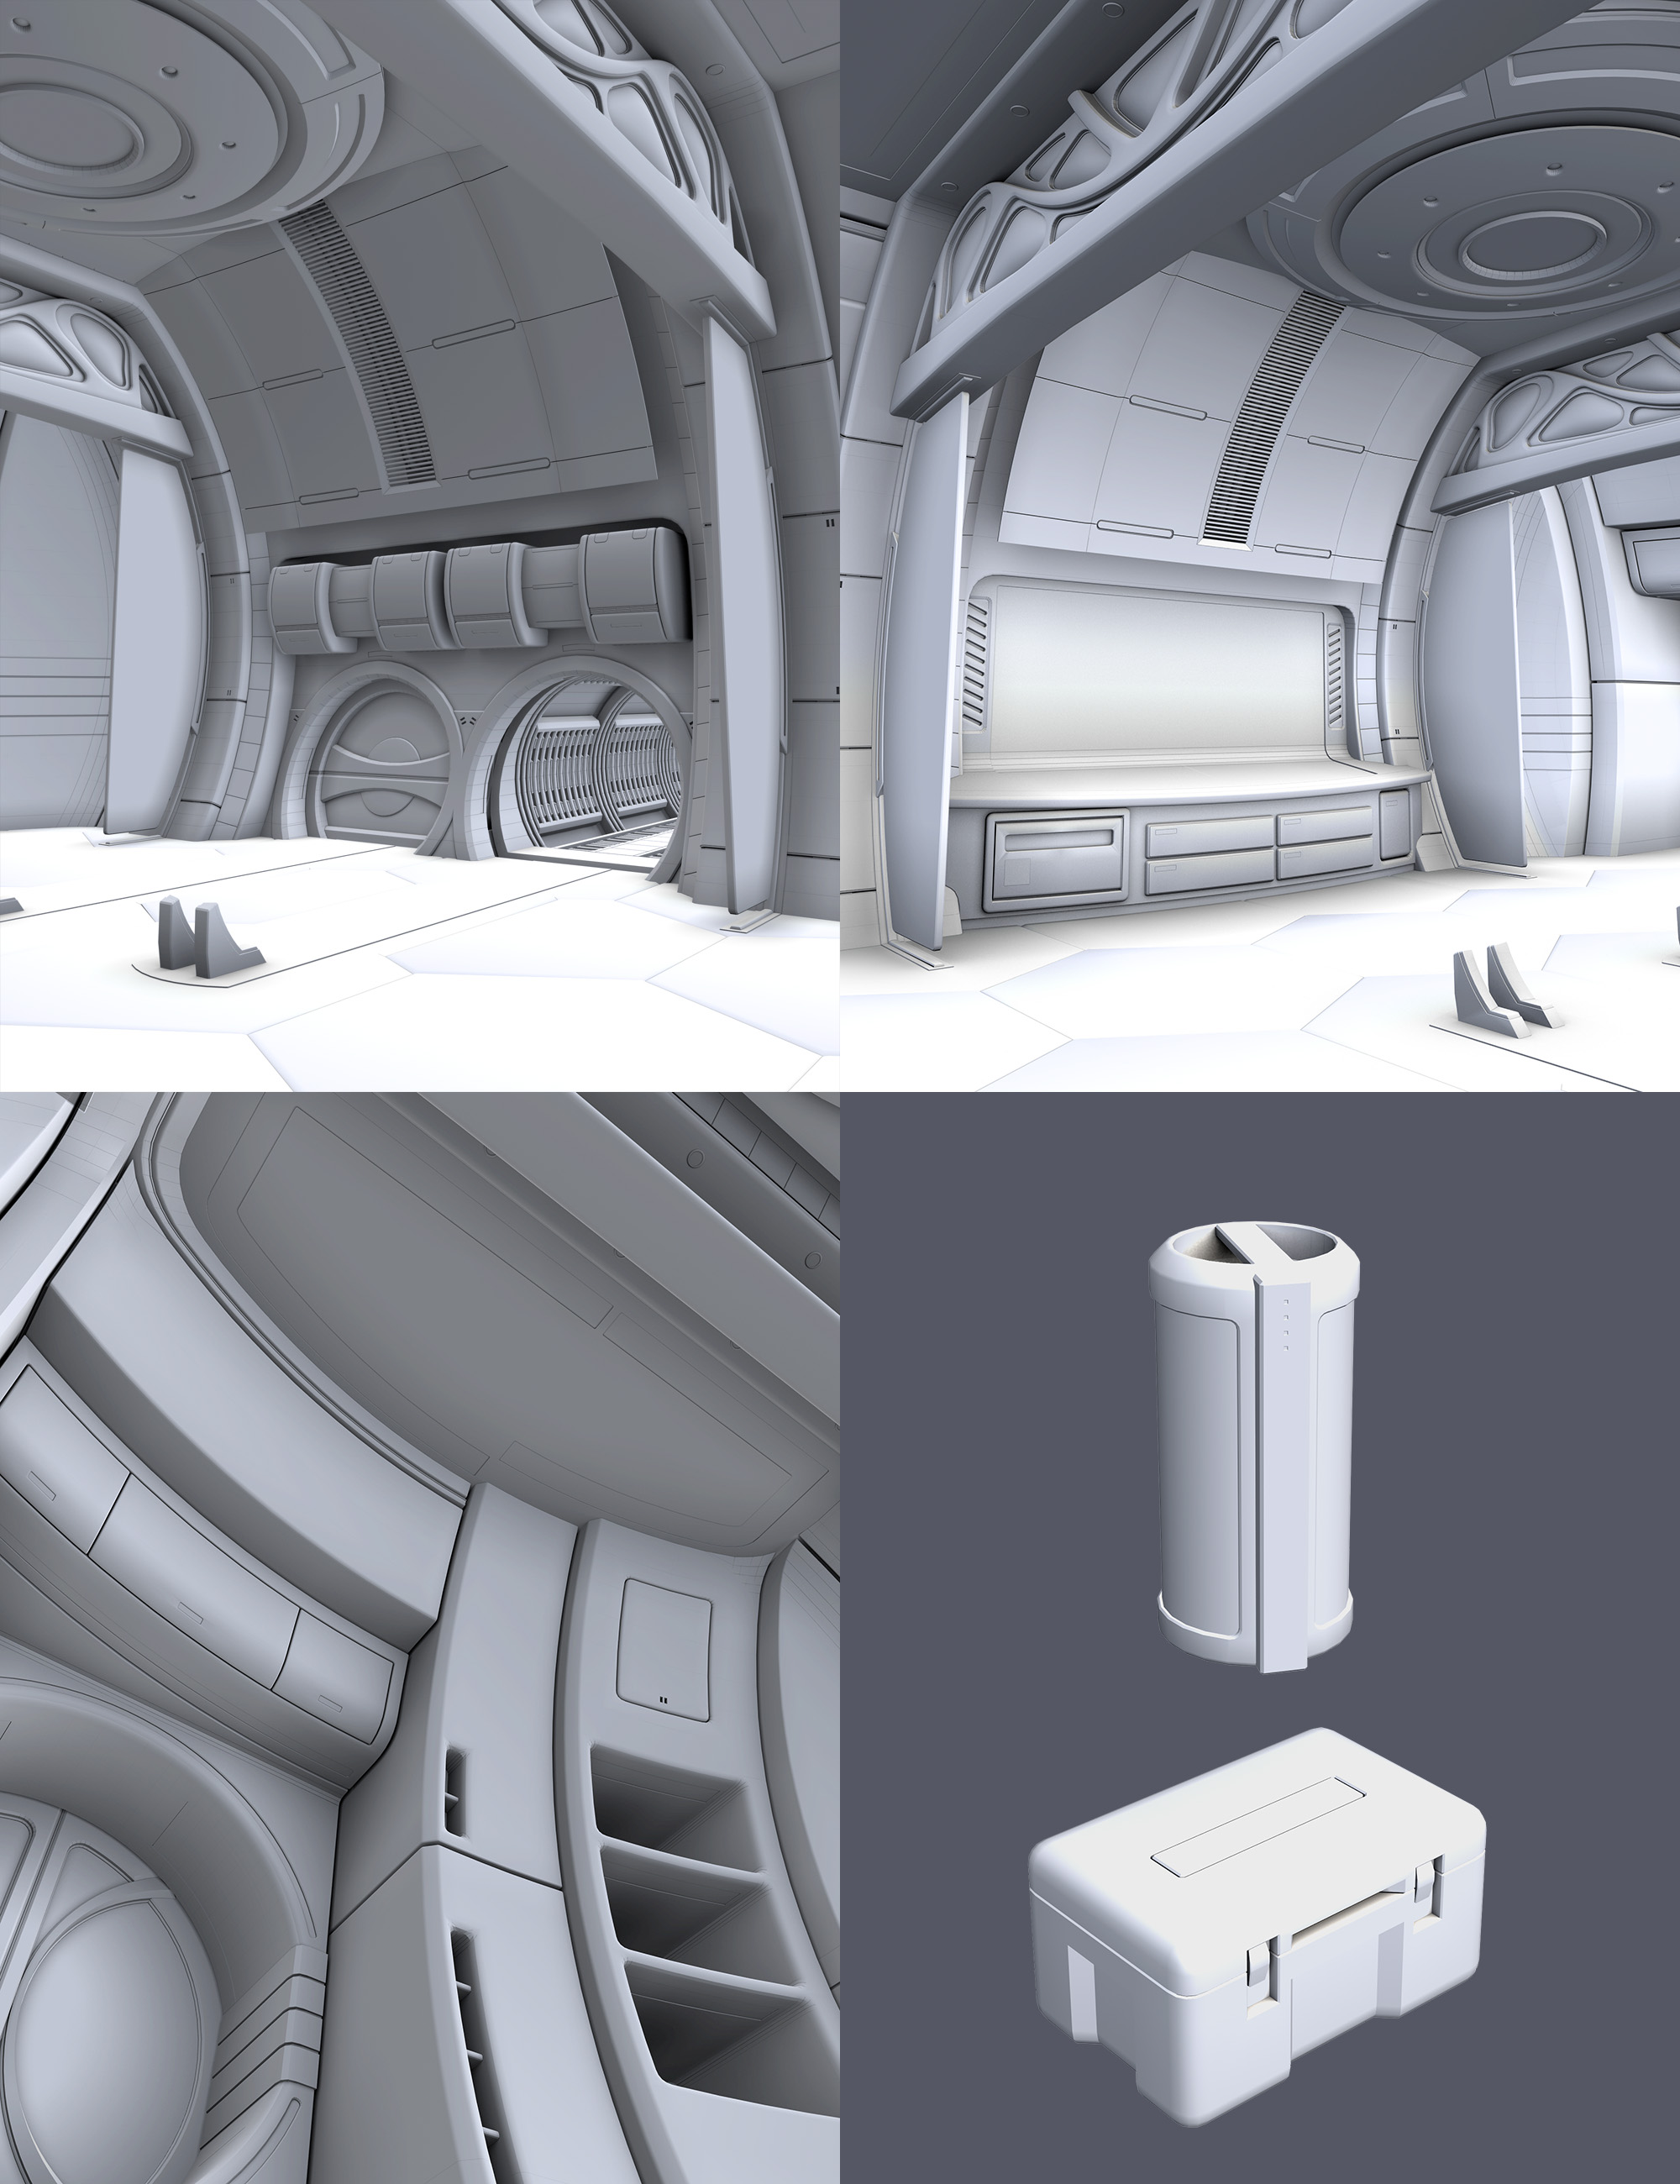 Lifepod Hangar by: MarieL, 3D Models by Daz 3D